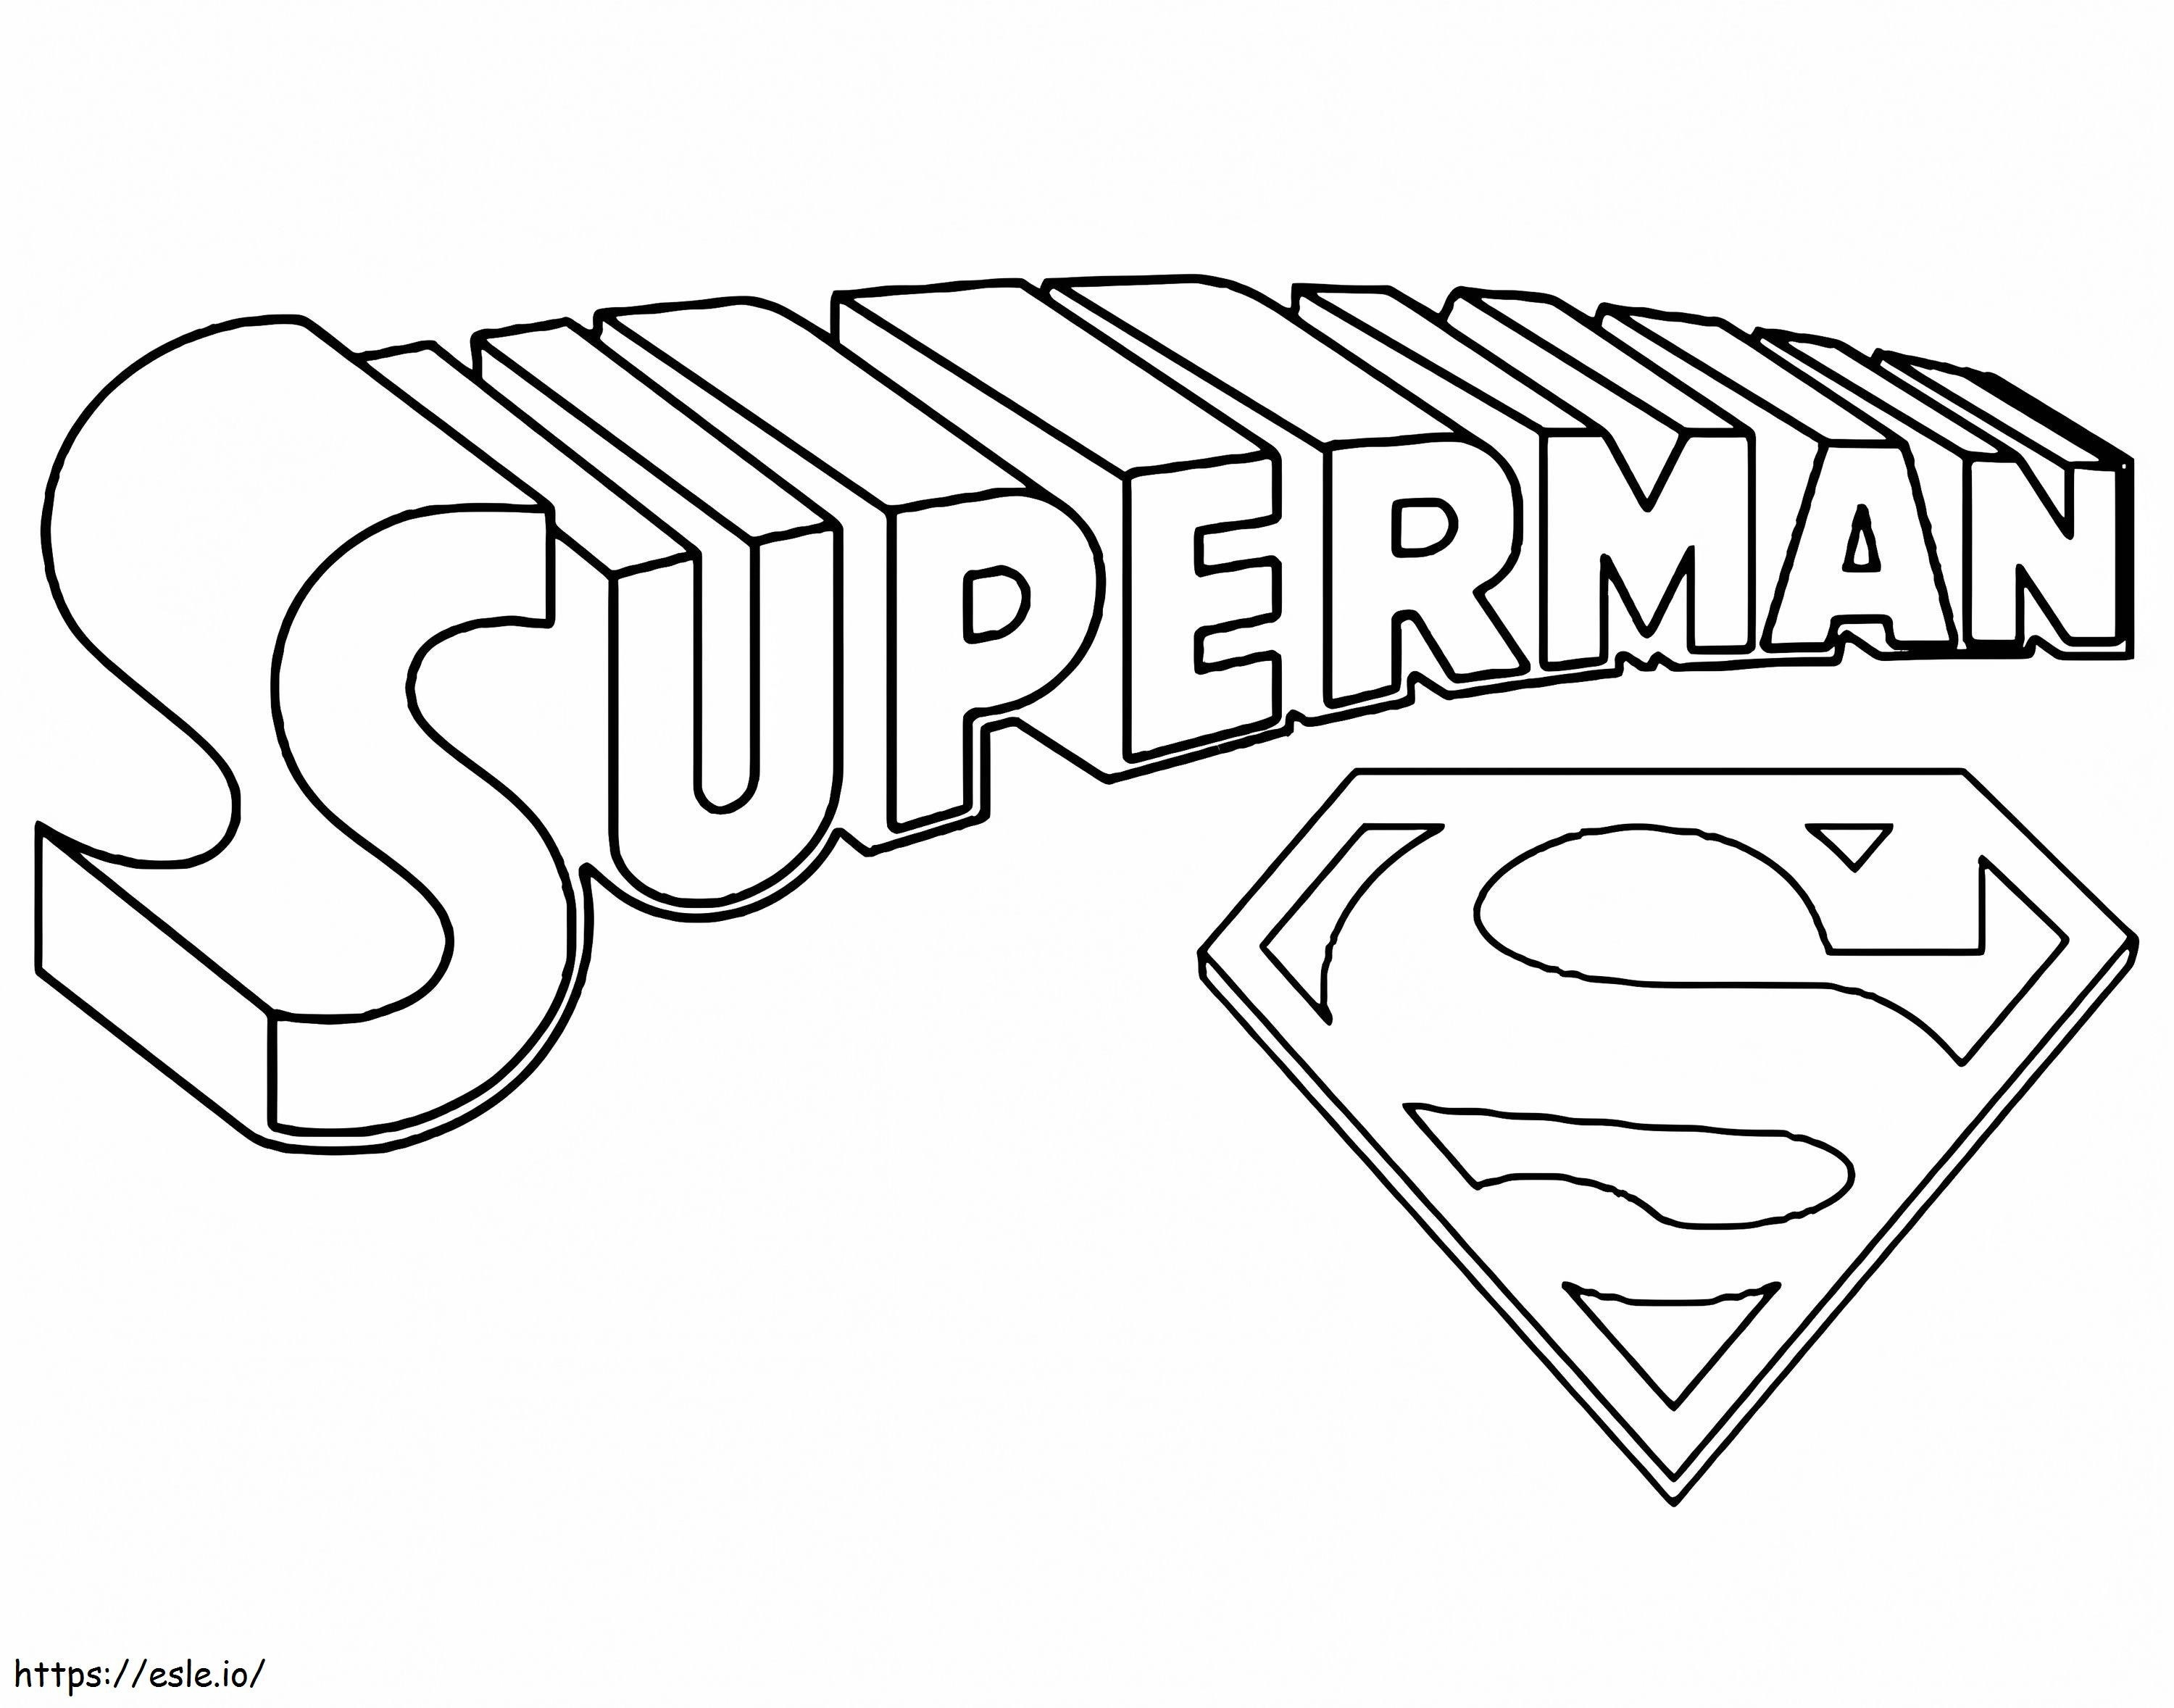 Título e símbolo do Superman para colorir